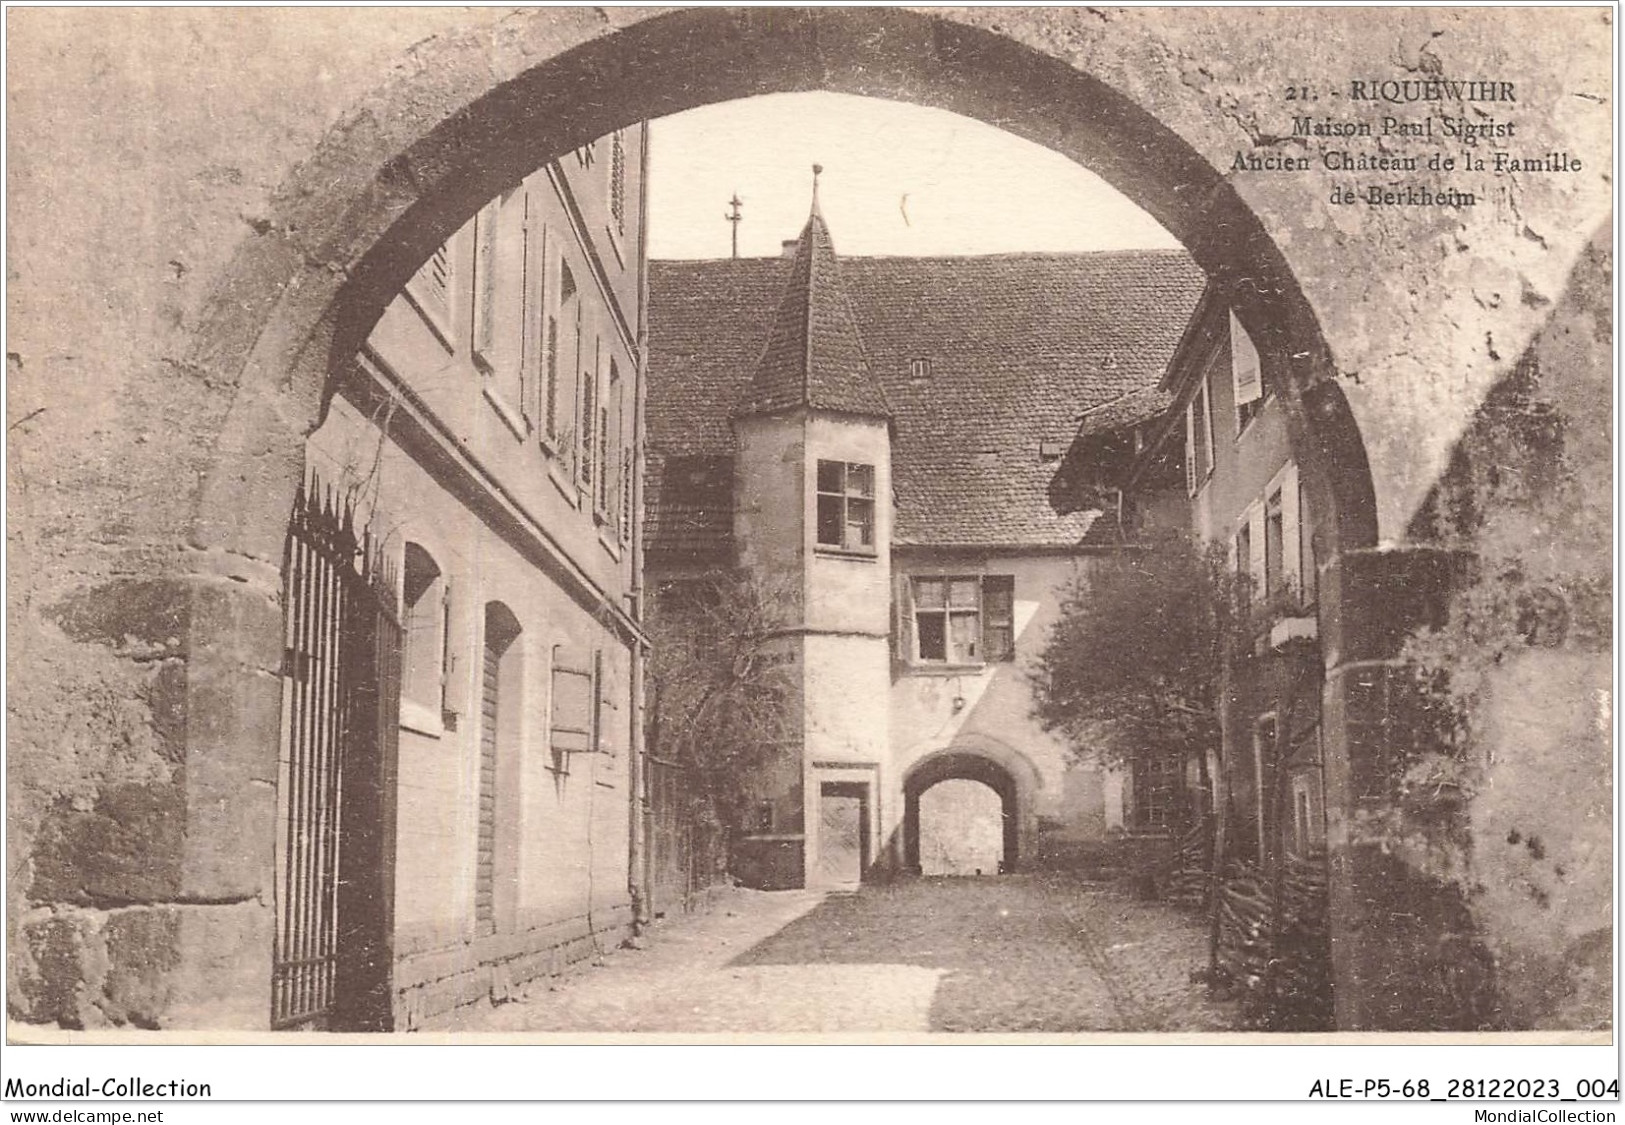 ALE1P5-68-0403 - RIQUEWIHR - Maison Paul Sigrist - Ancien Château De La Famille De Berkheim - Riquewihr